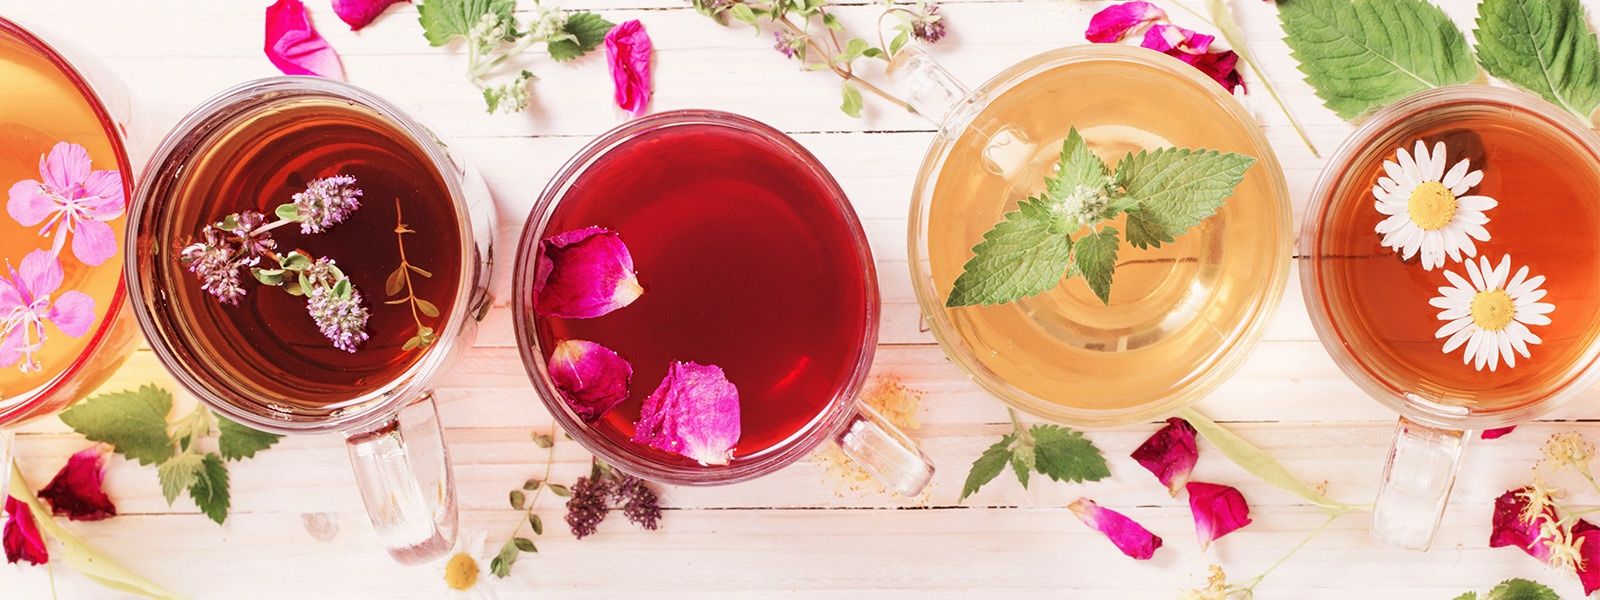 Verschiedenfarbige Tees mit Blütendeko von oben